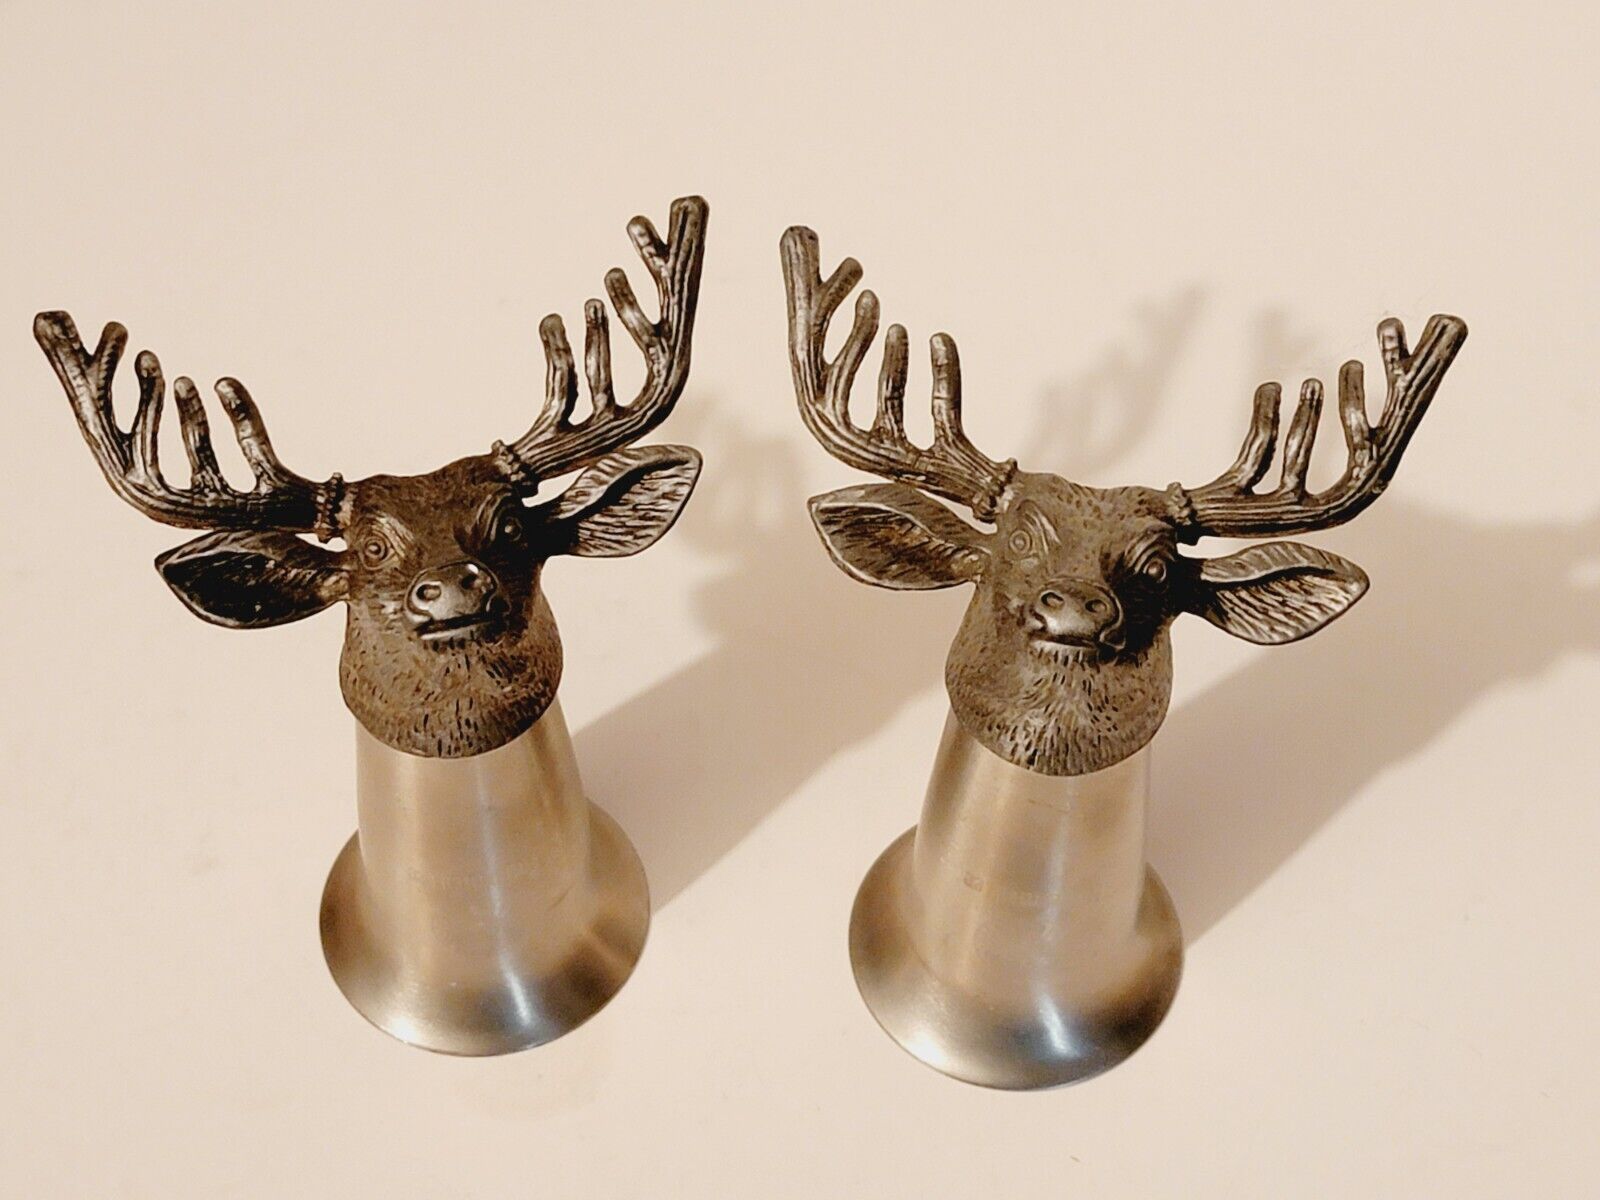 2 Jagermeister Stainless Steel Shot Glasses With Pewter Elk, Deer, Stag Head